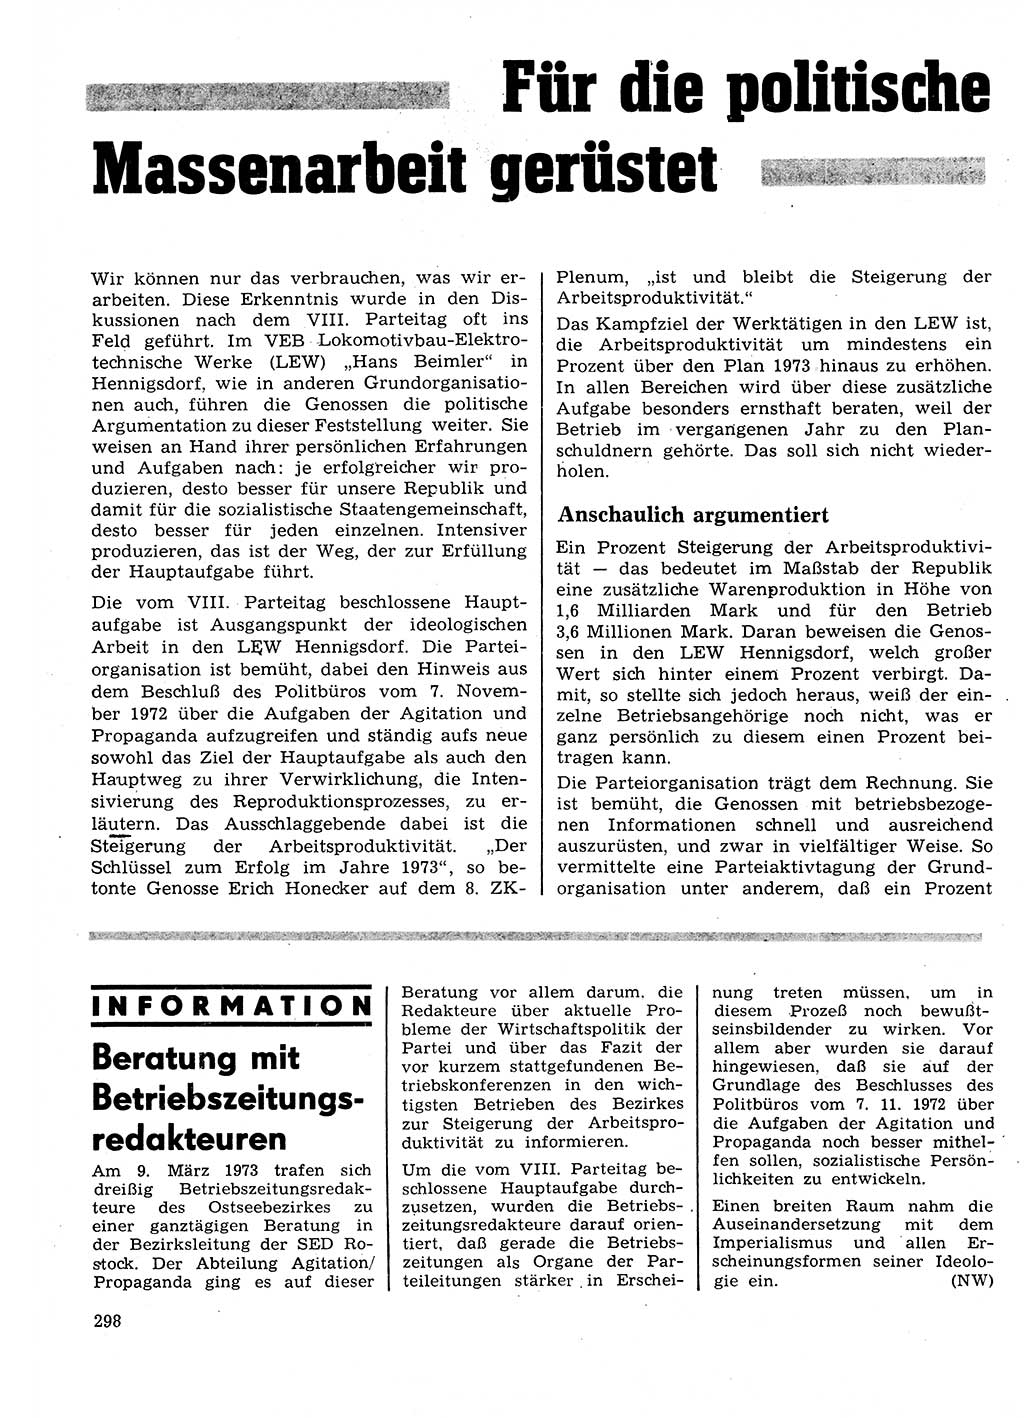 Neuer Weg (NW), Organ des Zentralkomitees (ZK) der SED (Sozialistische Einheitspartei Deutschlands) fÃ¼r Fragen des Parteilebens, 28. Jahrgang [Deutsche Demokratische Republik (DDR)] 1973, Seite 298 (NW ZK SED DDR 1973, S. 298)